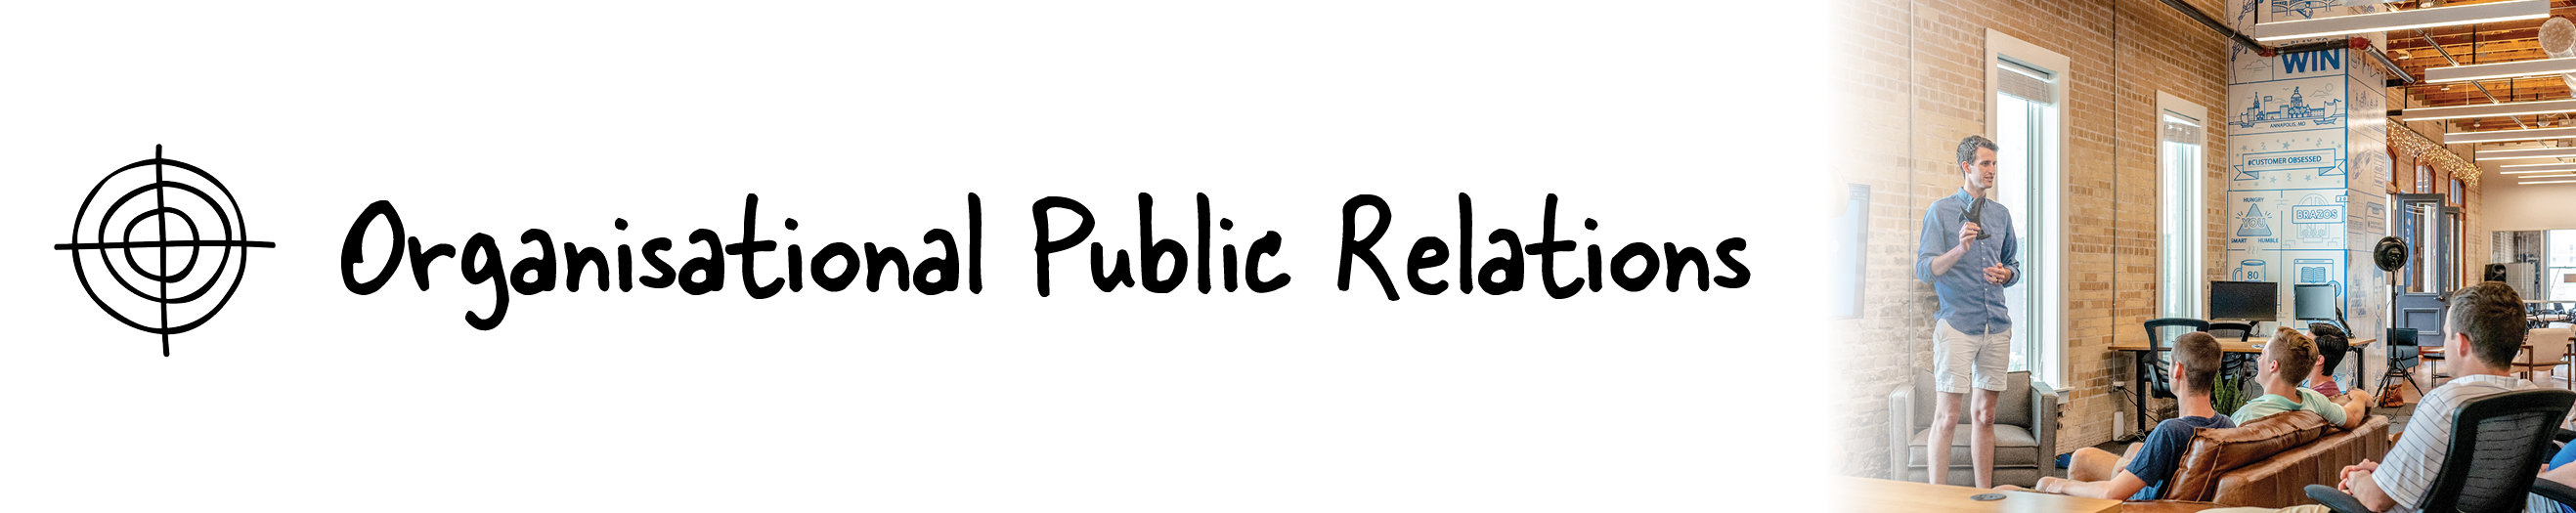 Organisational Public Relations